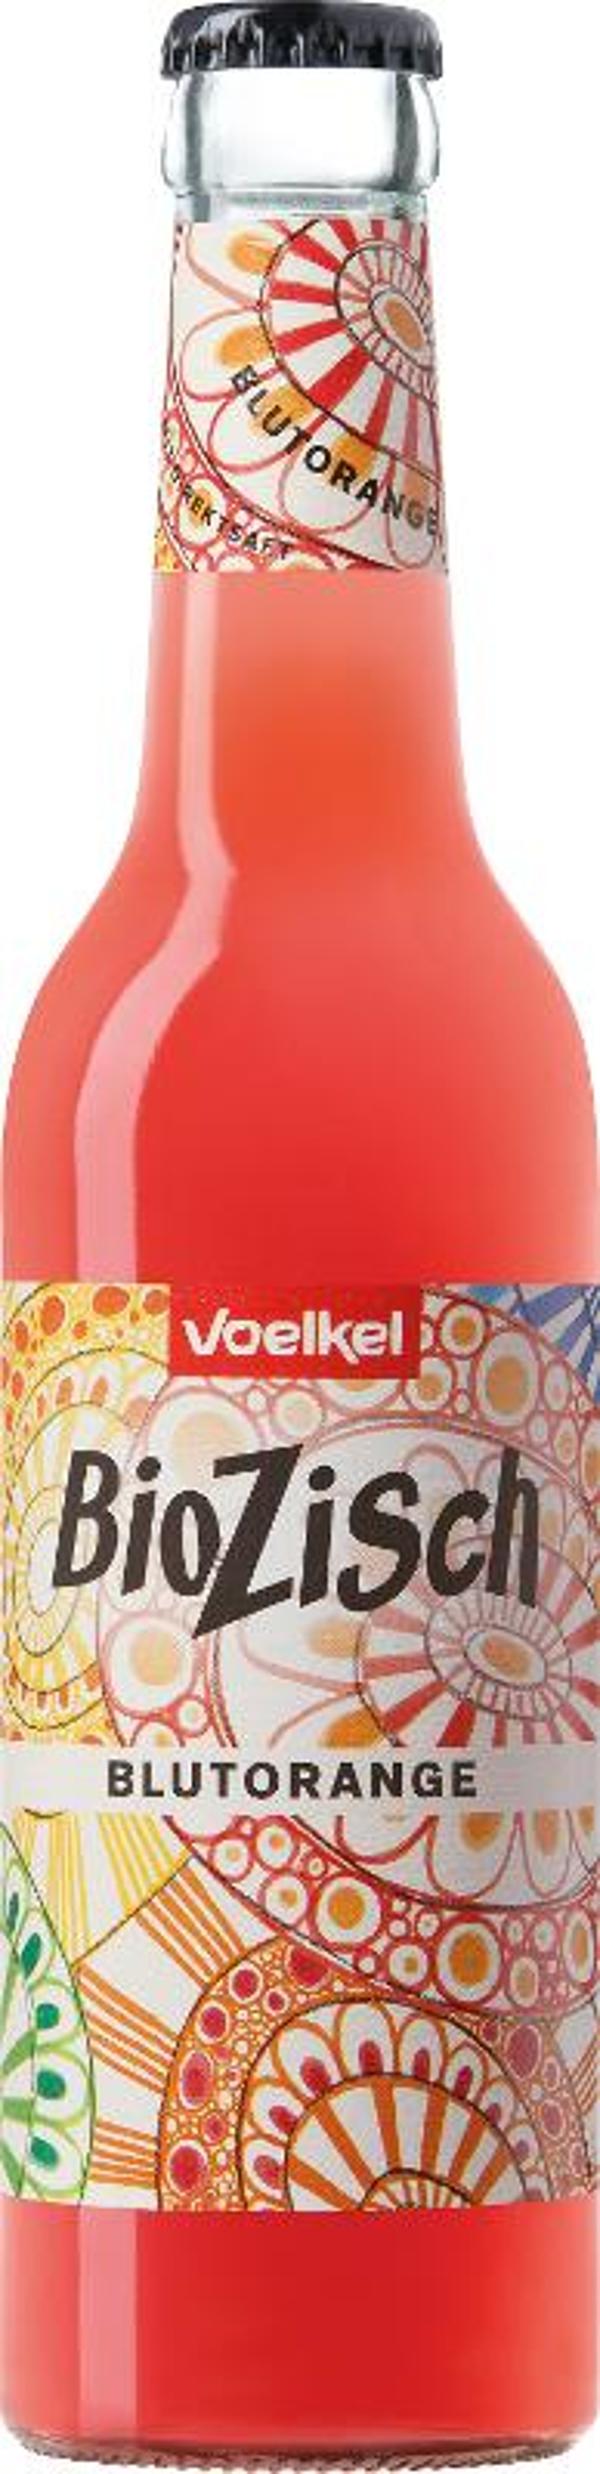 Produktfoto zu BioZisch Blutorange 0,33l Flas